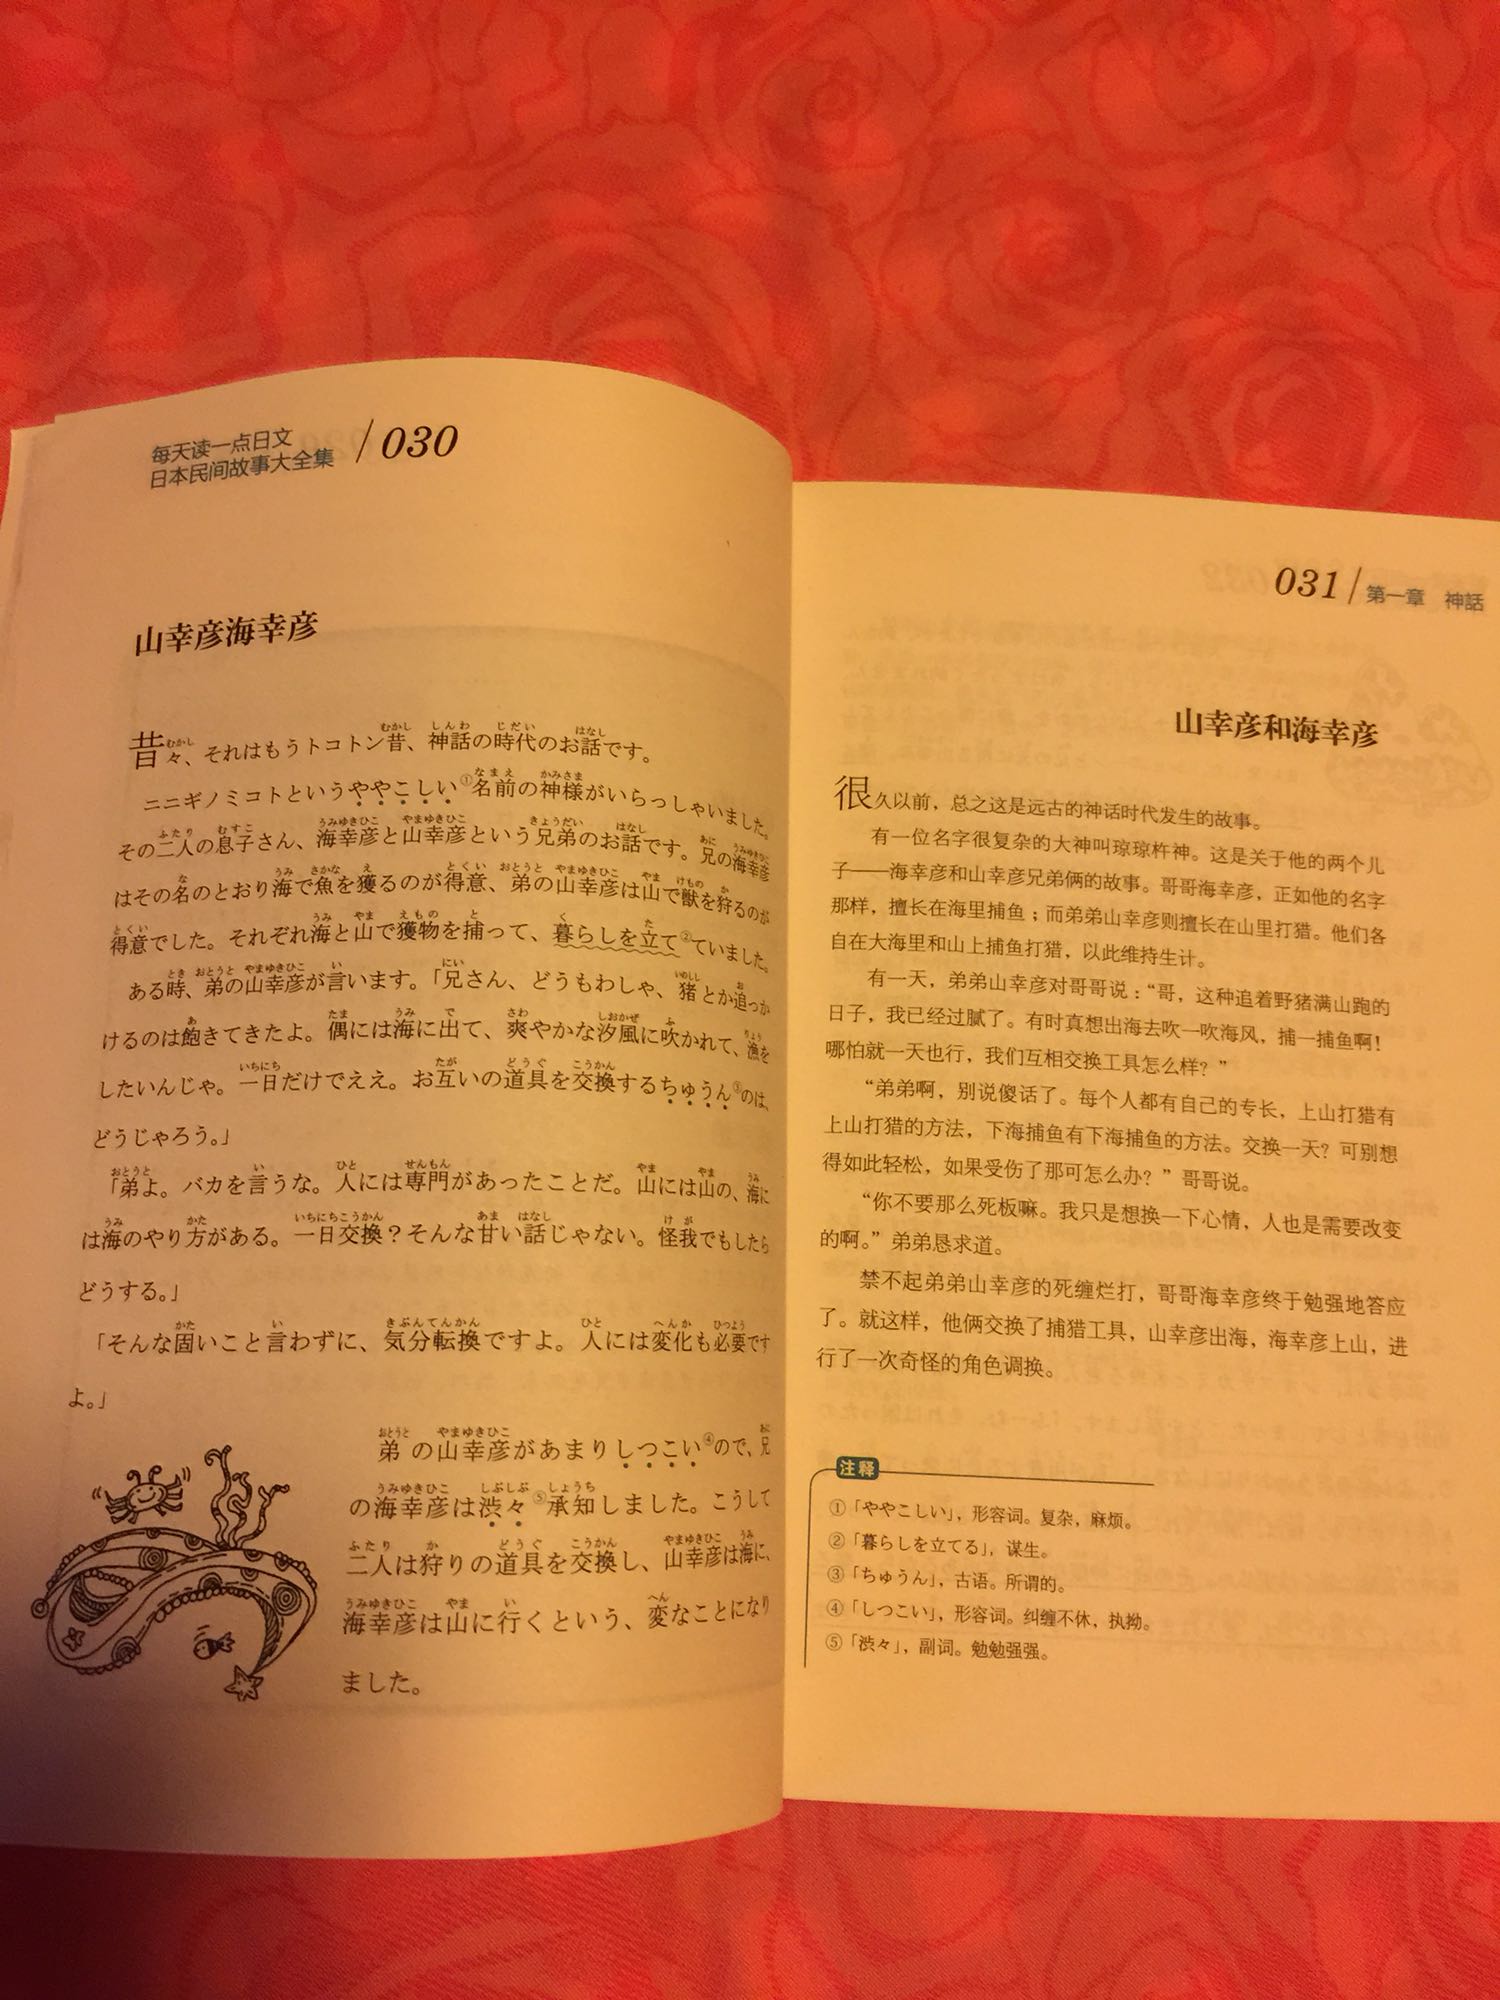 这本书真心好啊，纸张上等，字迹清晰，最主要是汉字全部有翻译。这样读起来才方便！